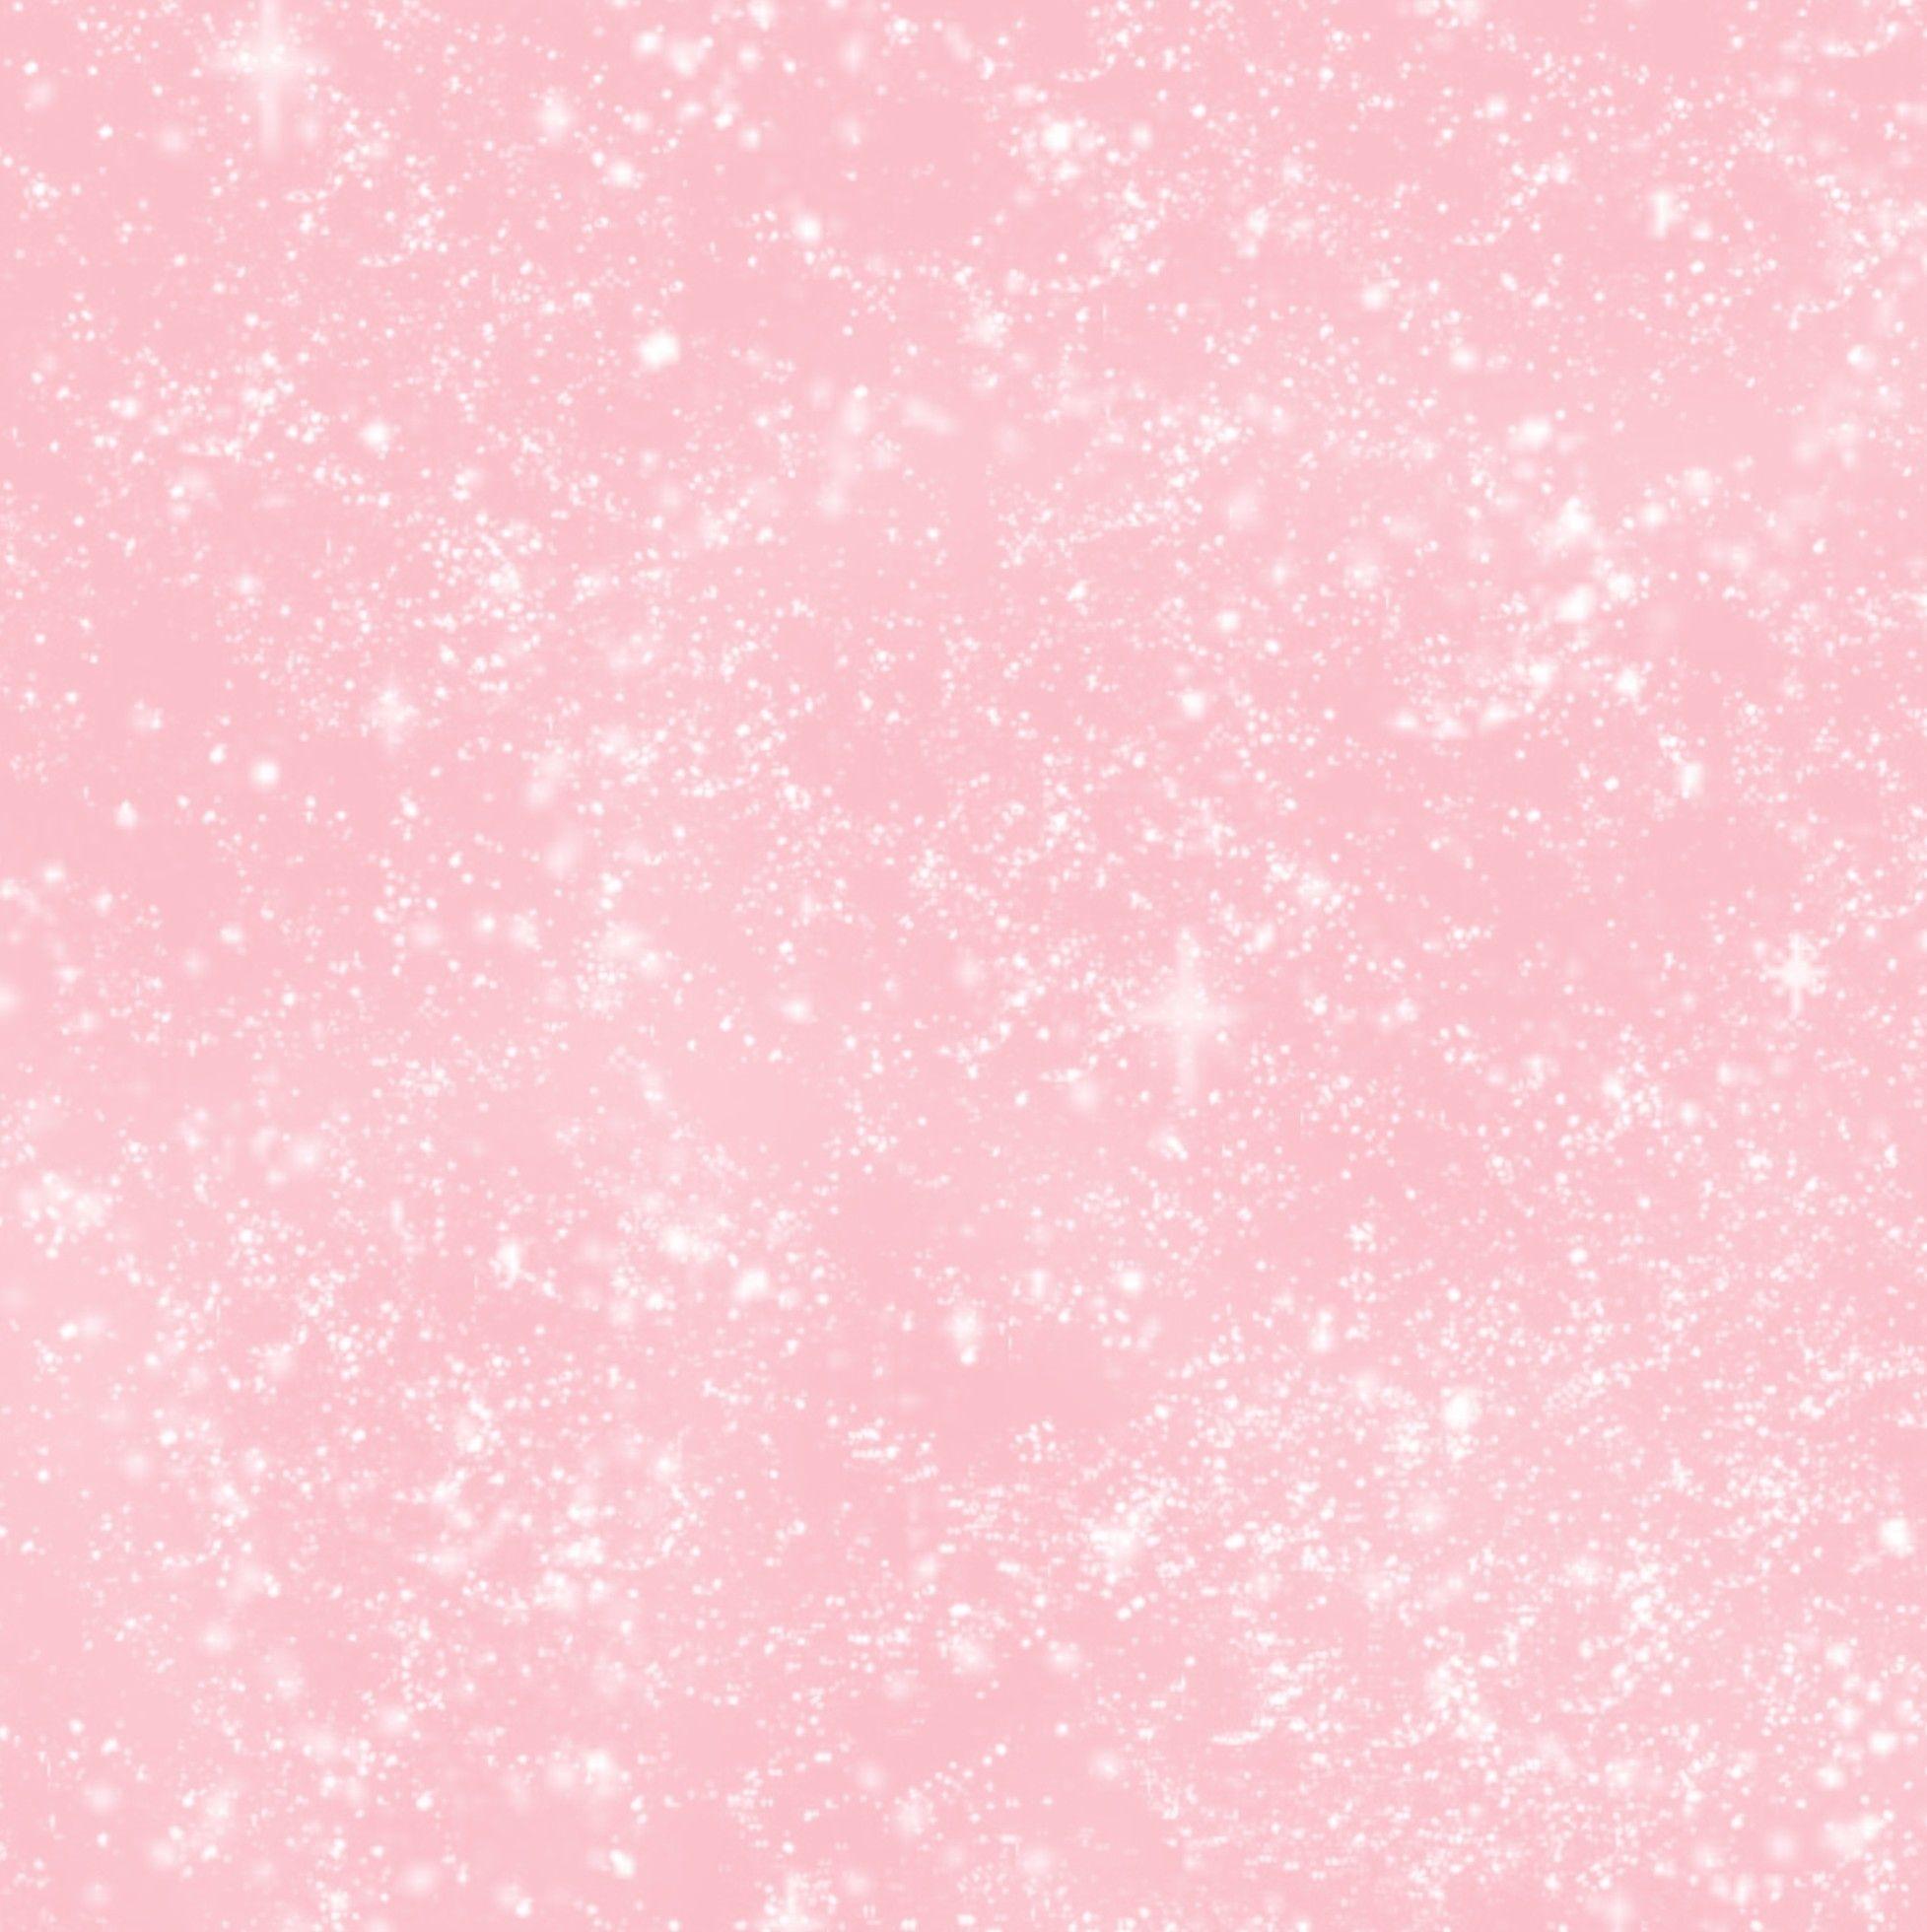 Plain Pastel Pink Background Tumblr gambar ke 8